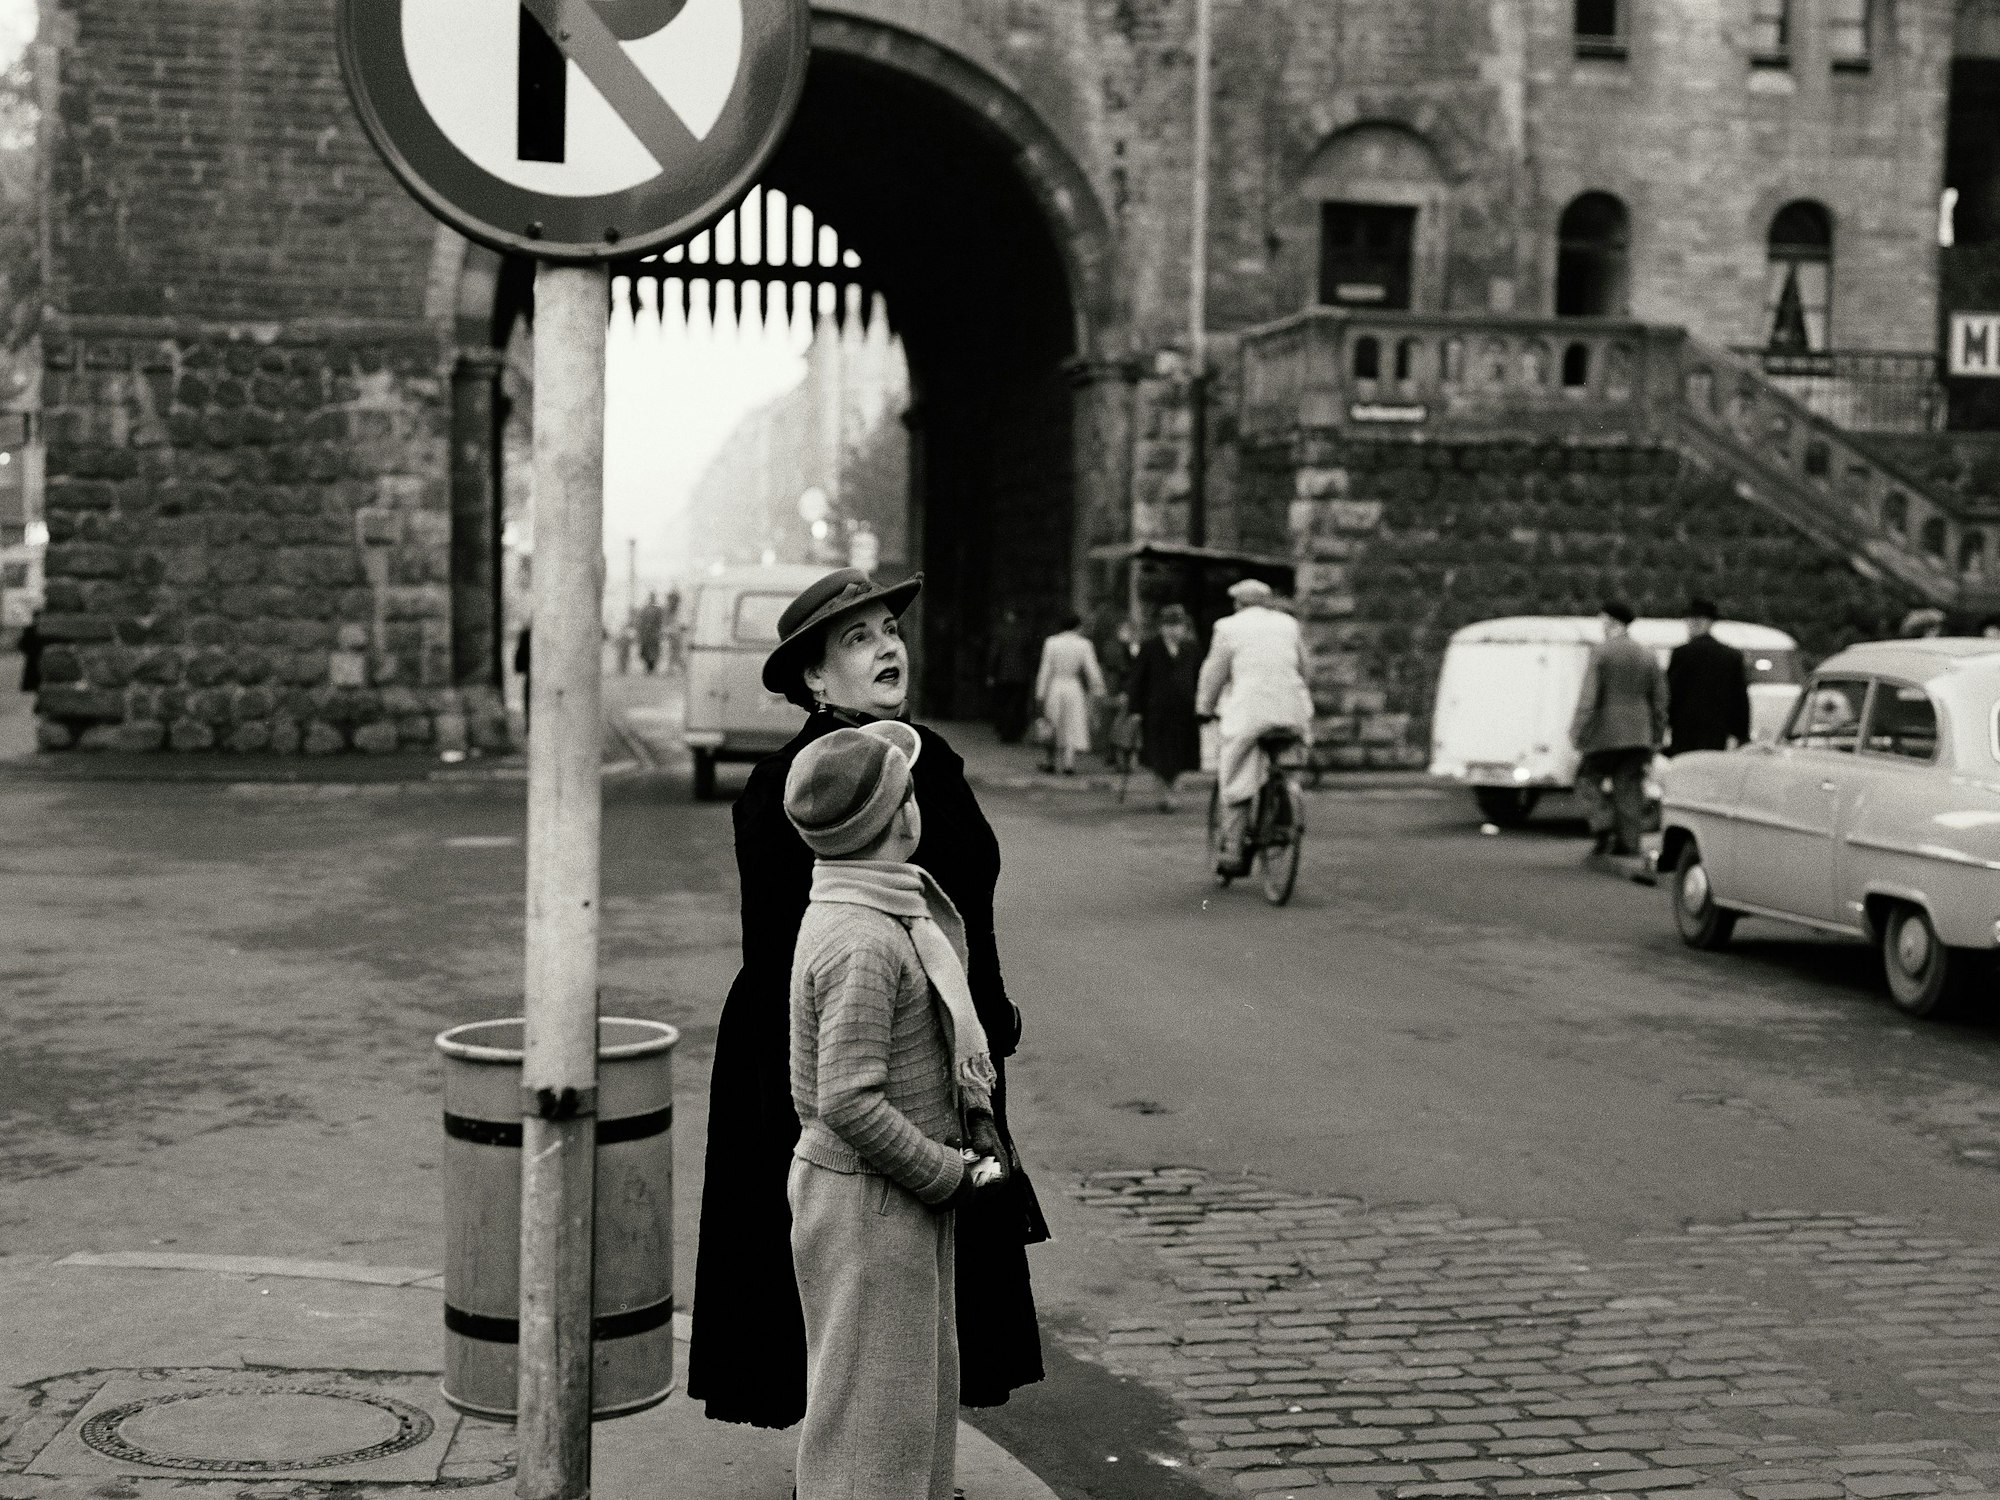 Mit Hut und Mantel: Eine Frau wartet am Straßenrand, gegenüber steht der Opel von Josef Niedecken.